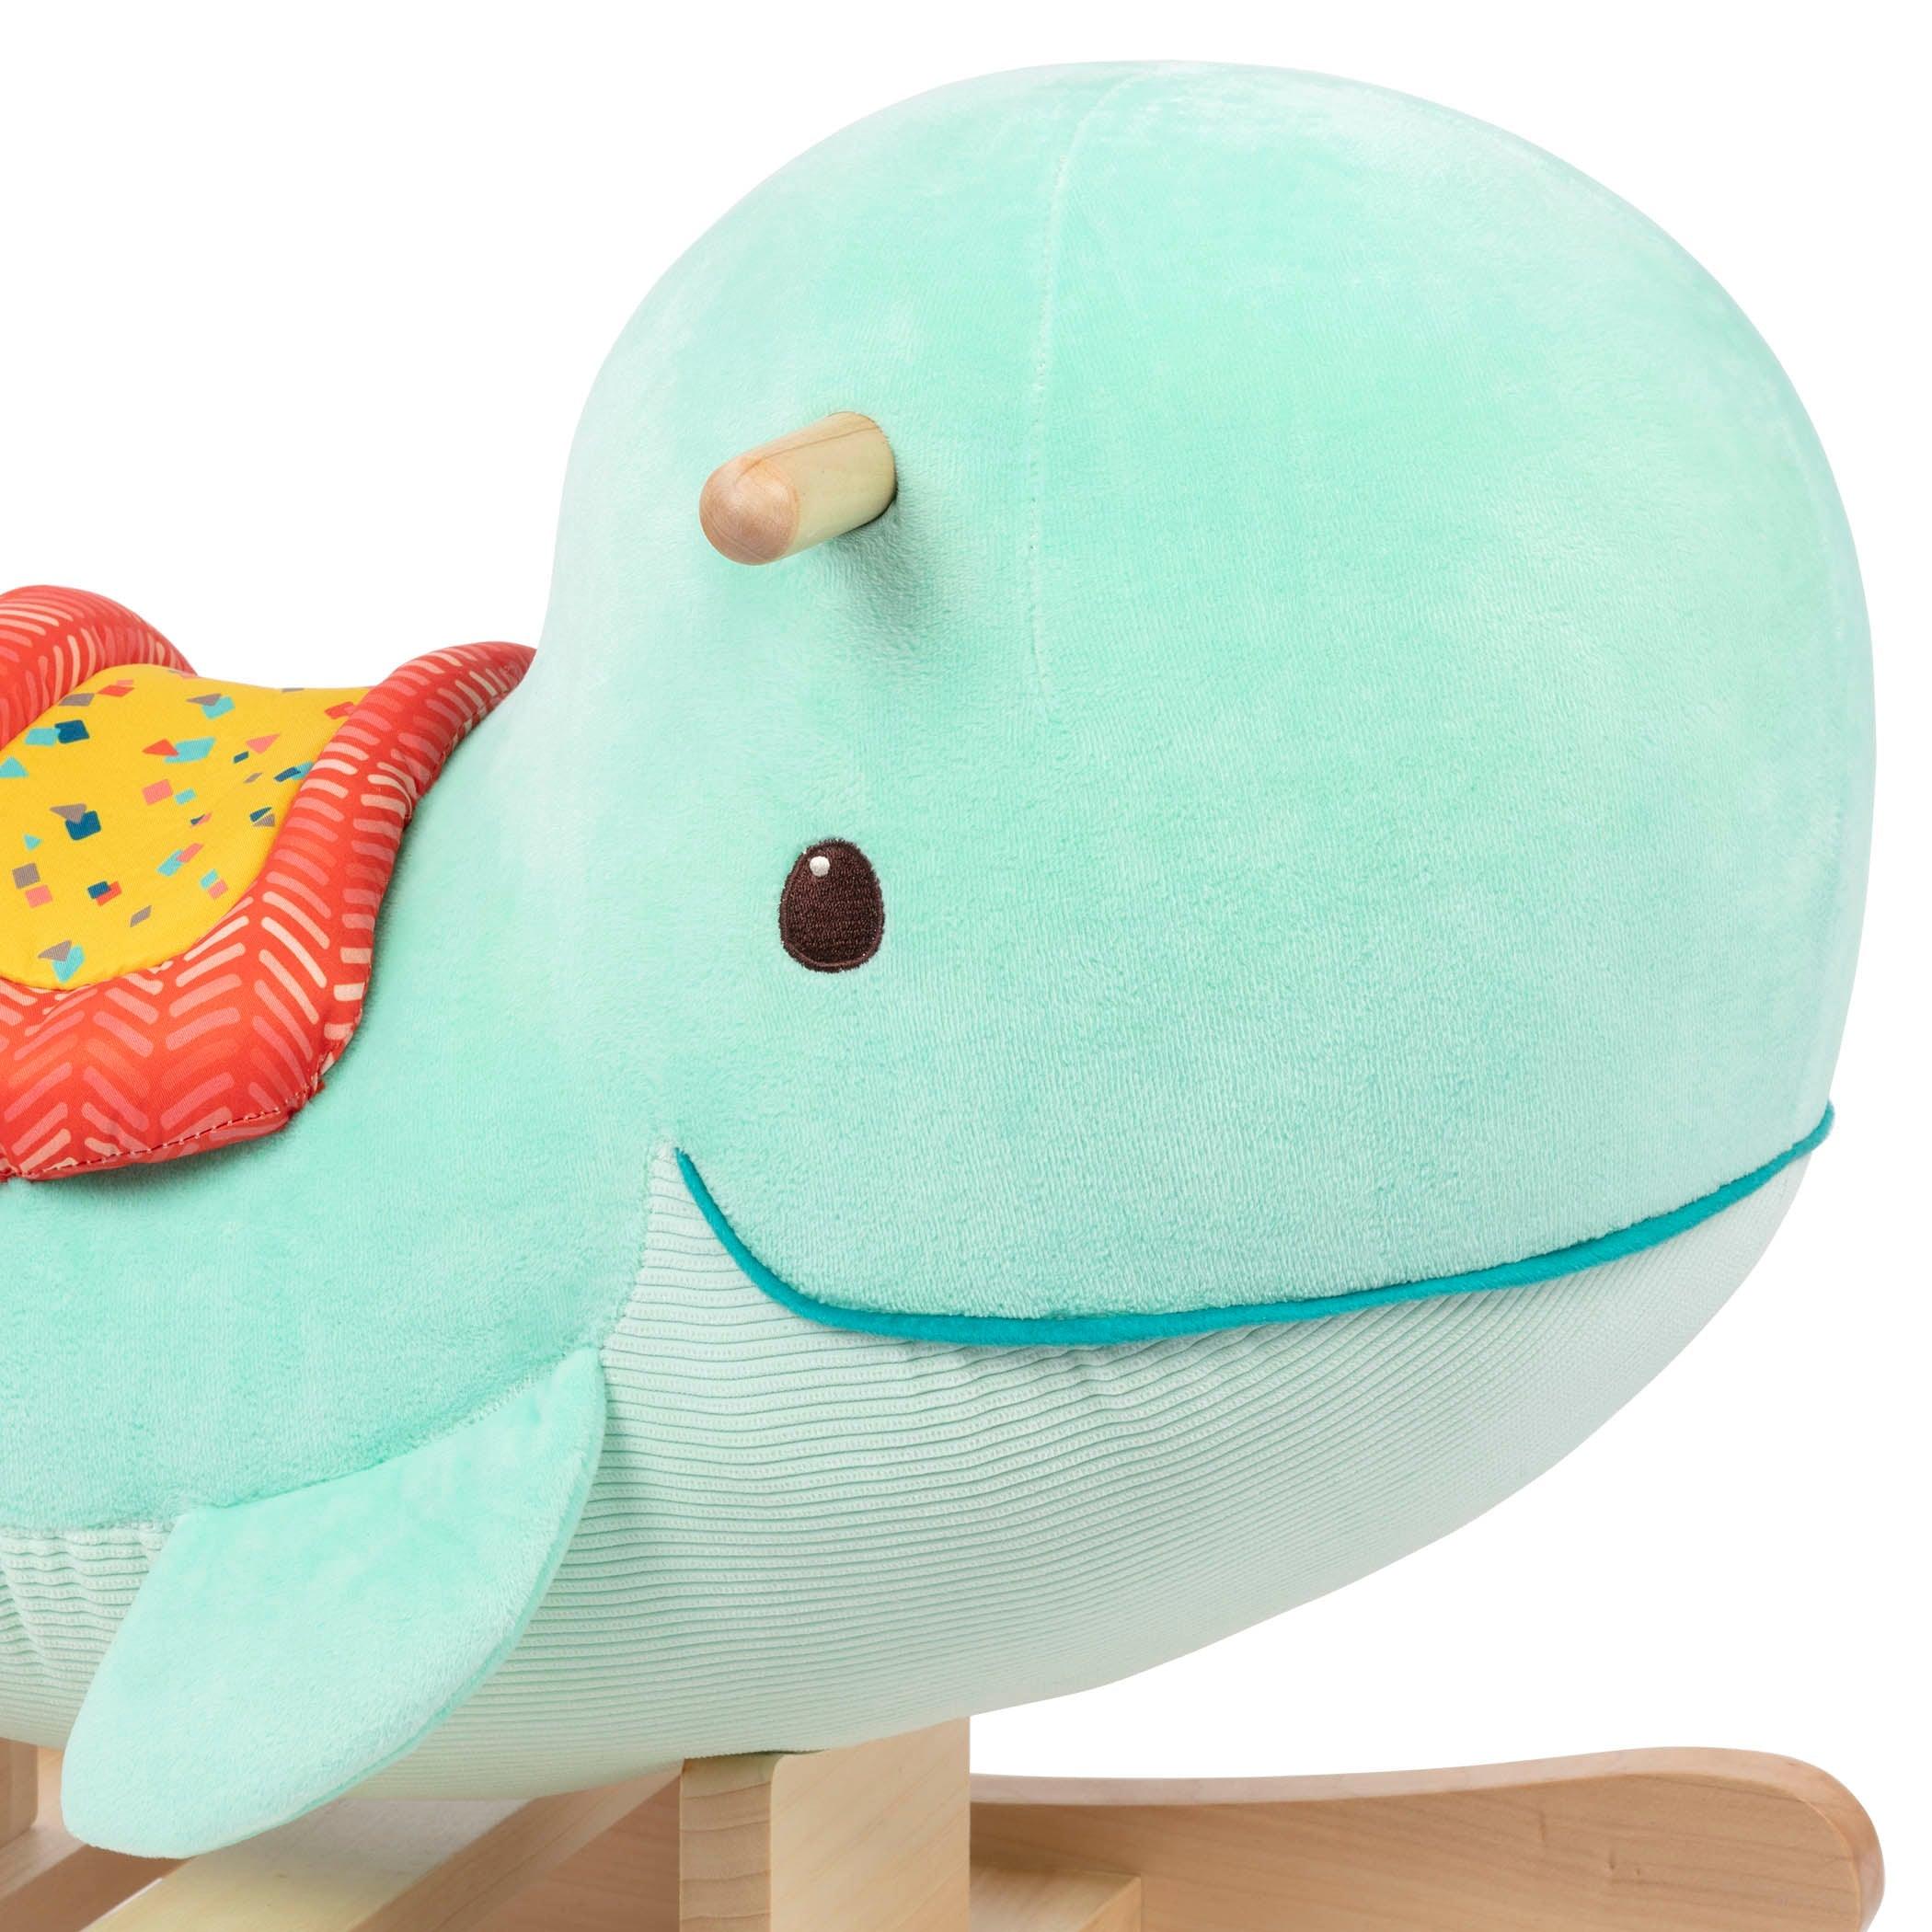 B.Toys: wieloryb na biegunach Whale Rocker Echo - Noski Noski